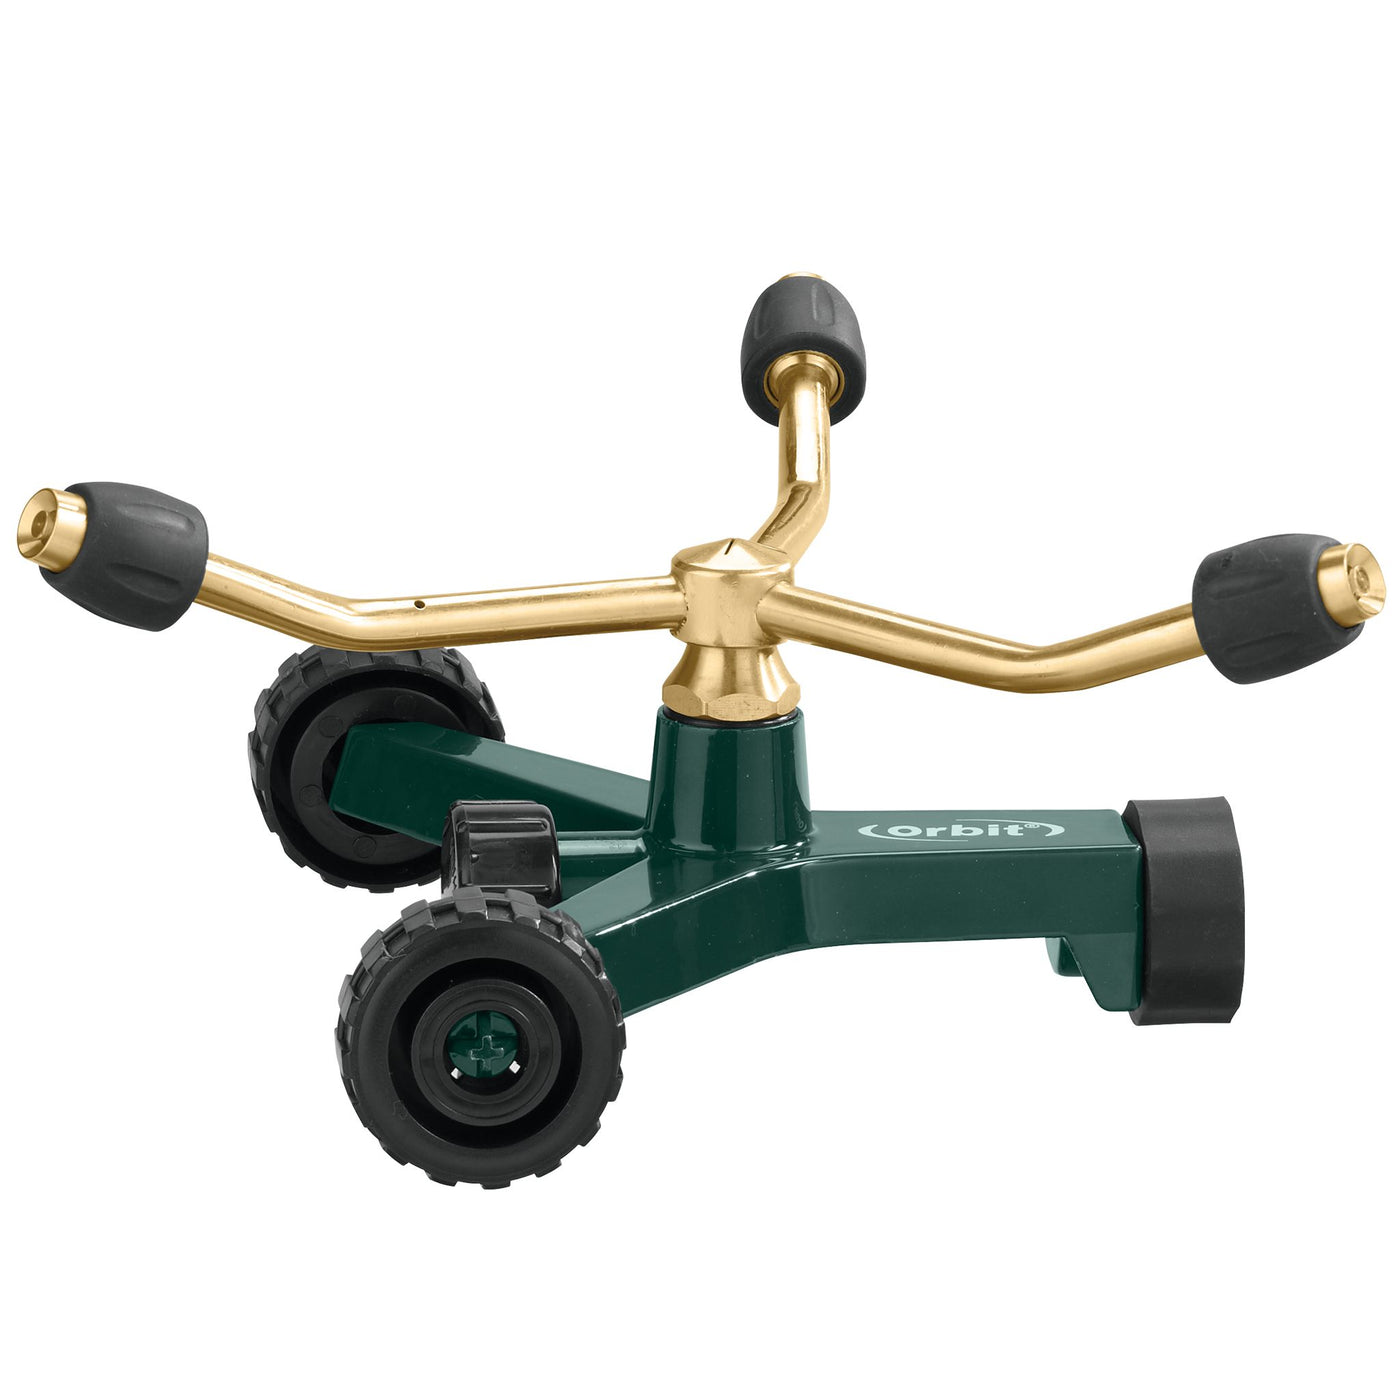 Brass 3-Arm Adjustable Sprinkler with Wheel Base - Model Number 91603.